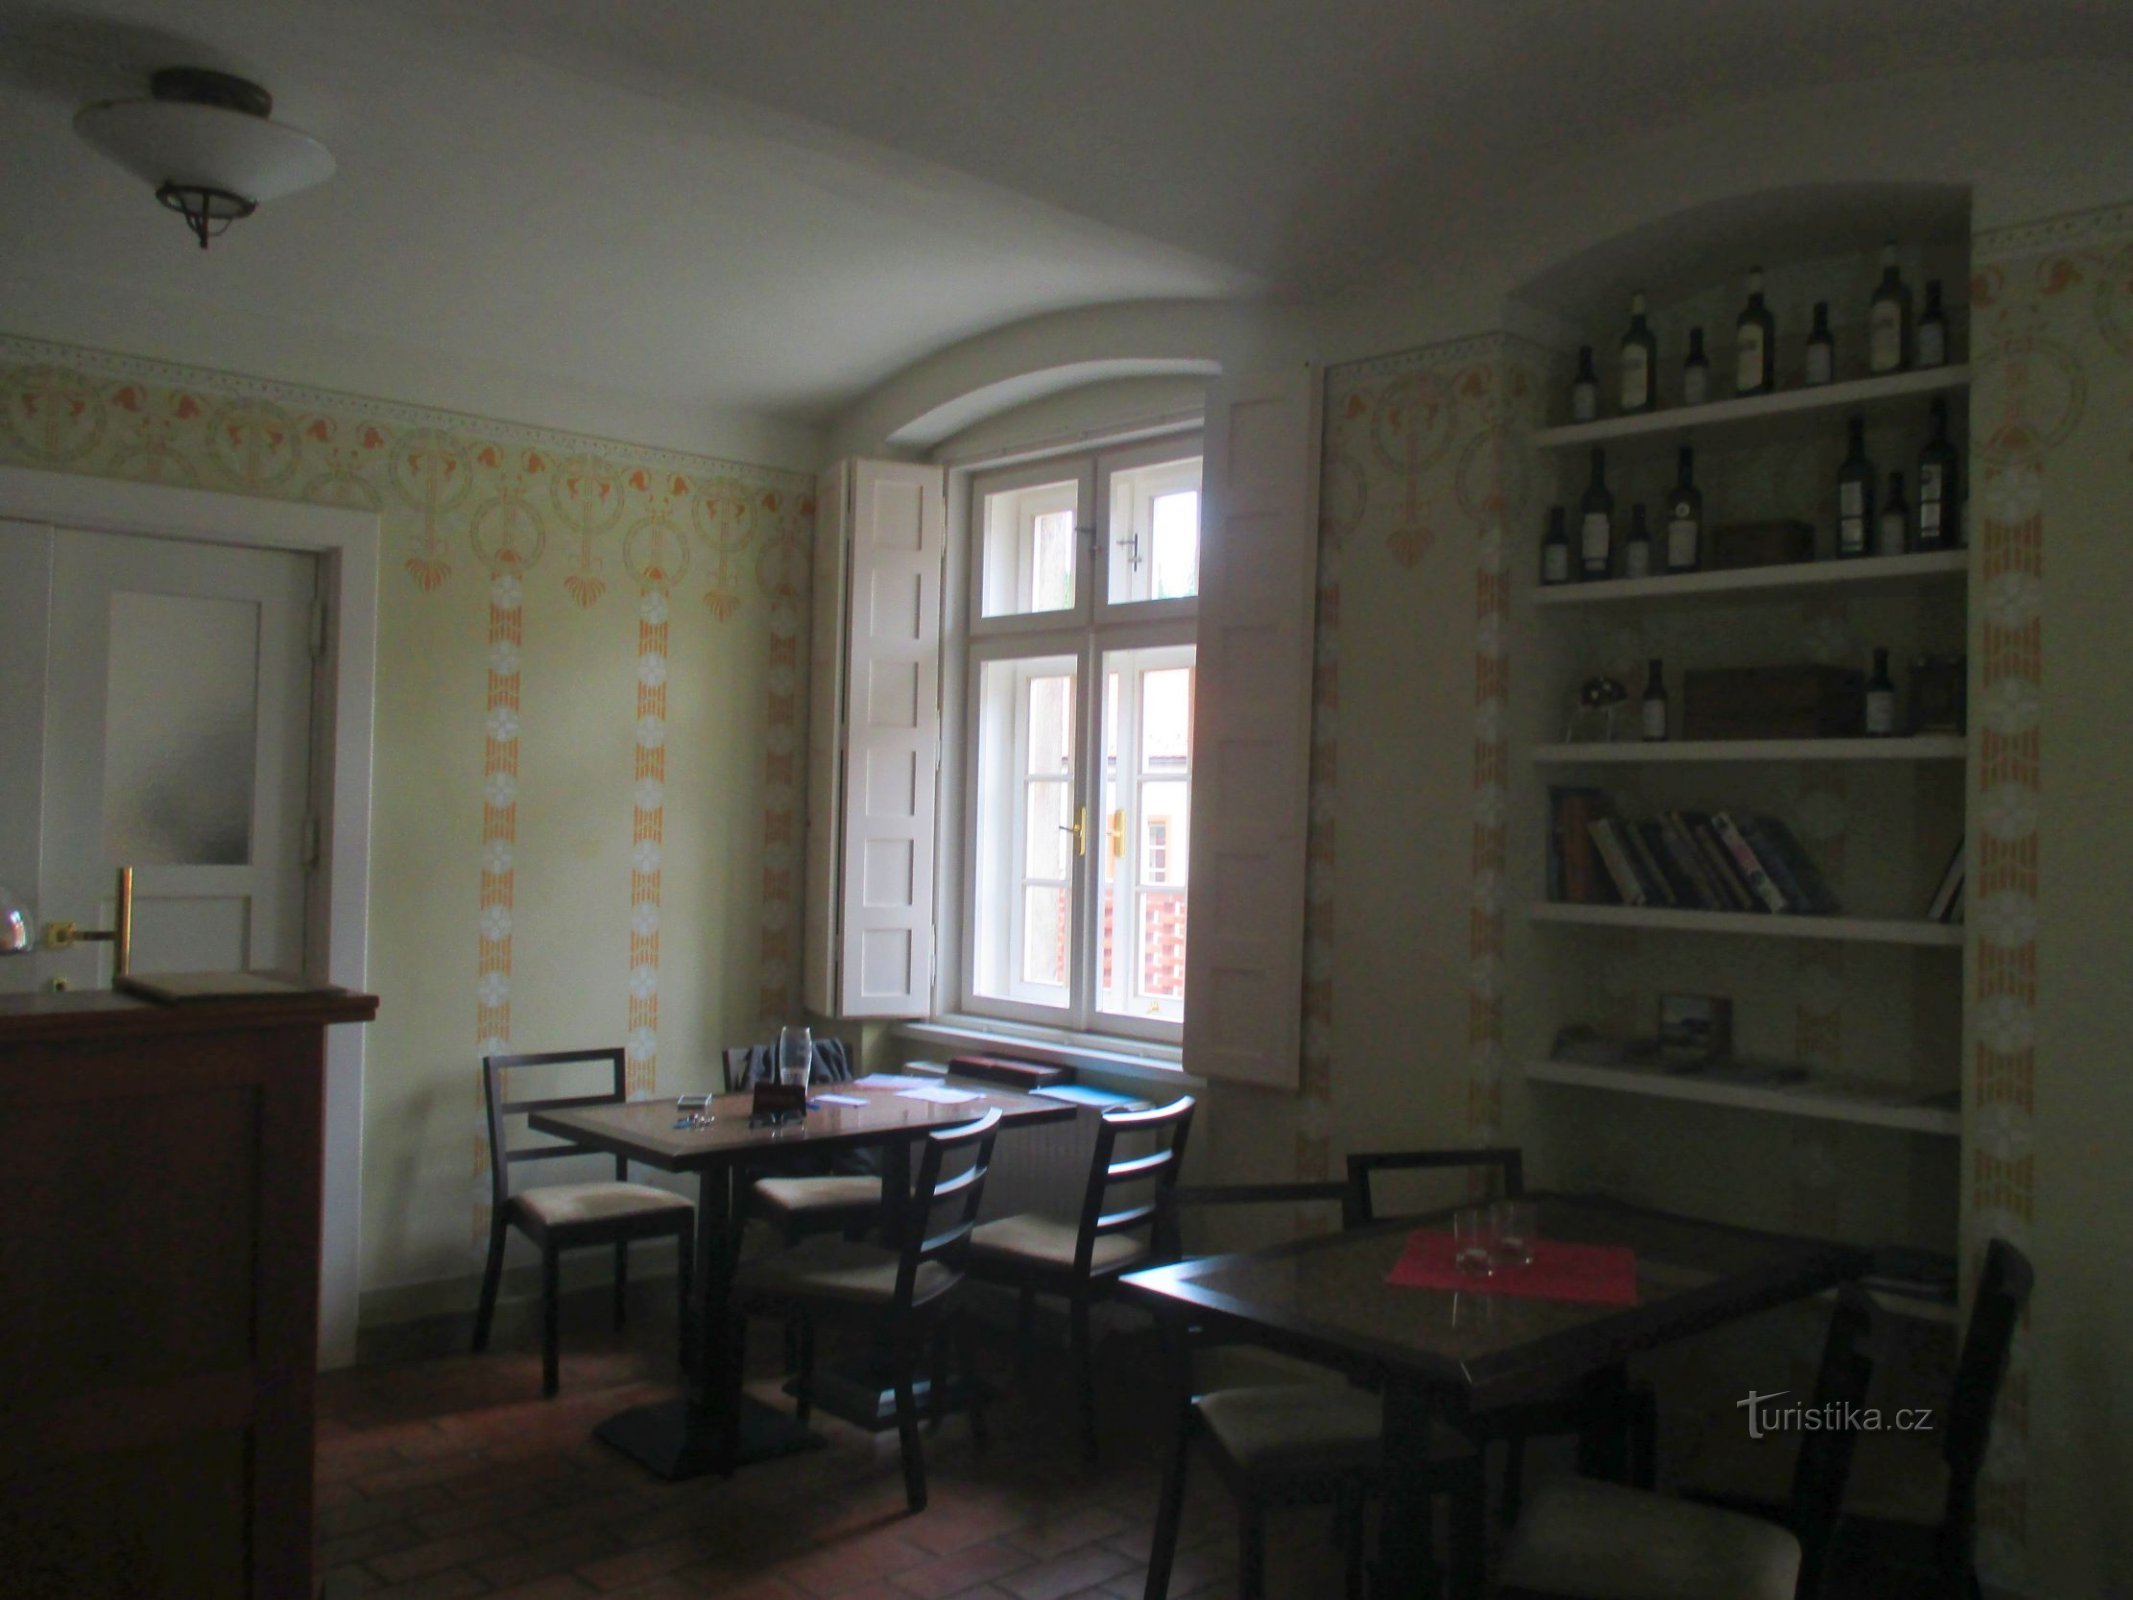 Synagogue Café nằm trong một căn hộ của giáo sĩ Do Thái trước đây với nội thất đã được tân trang lại một cách trung thực.